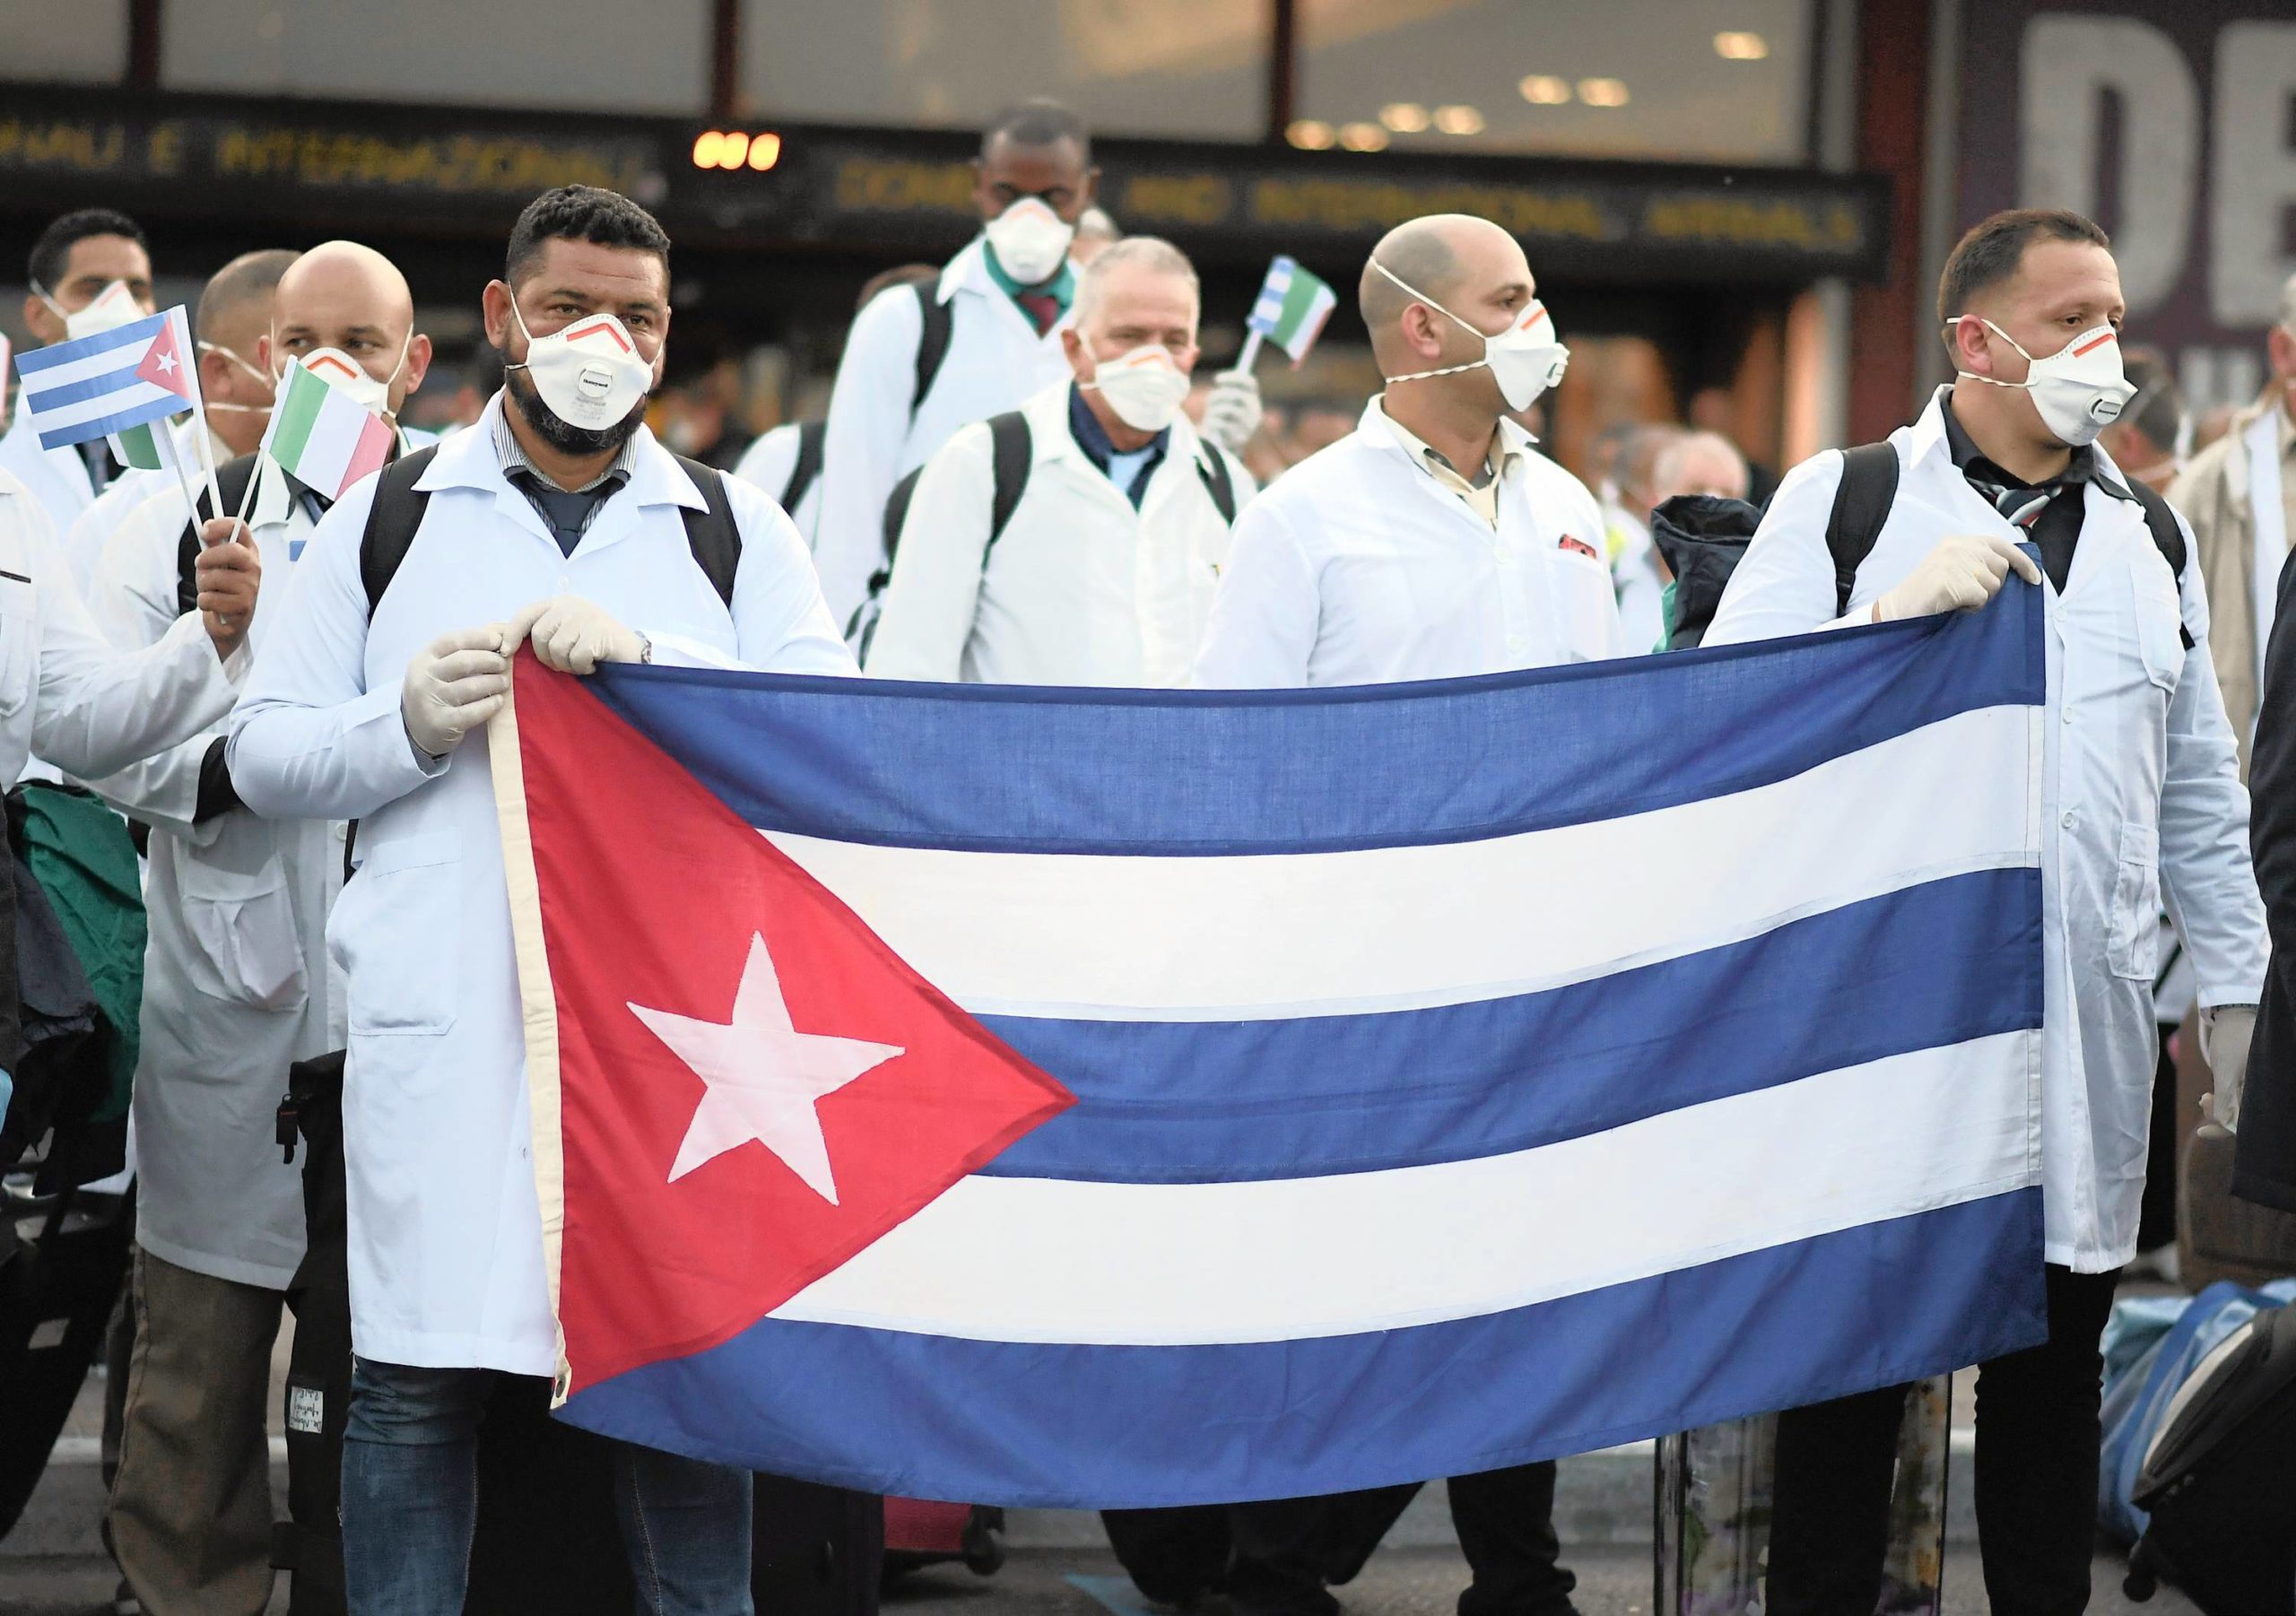 Nhóm bác sĩ Cuba đến Italia để hỗ trợ nước này chống dịch COVID-19, ngày 22/3/2020. Ảnh: REUTERS/Daniele Mascolo.